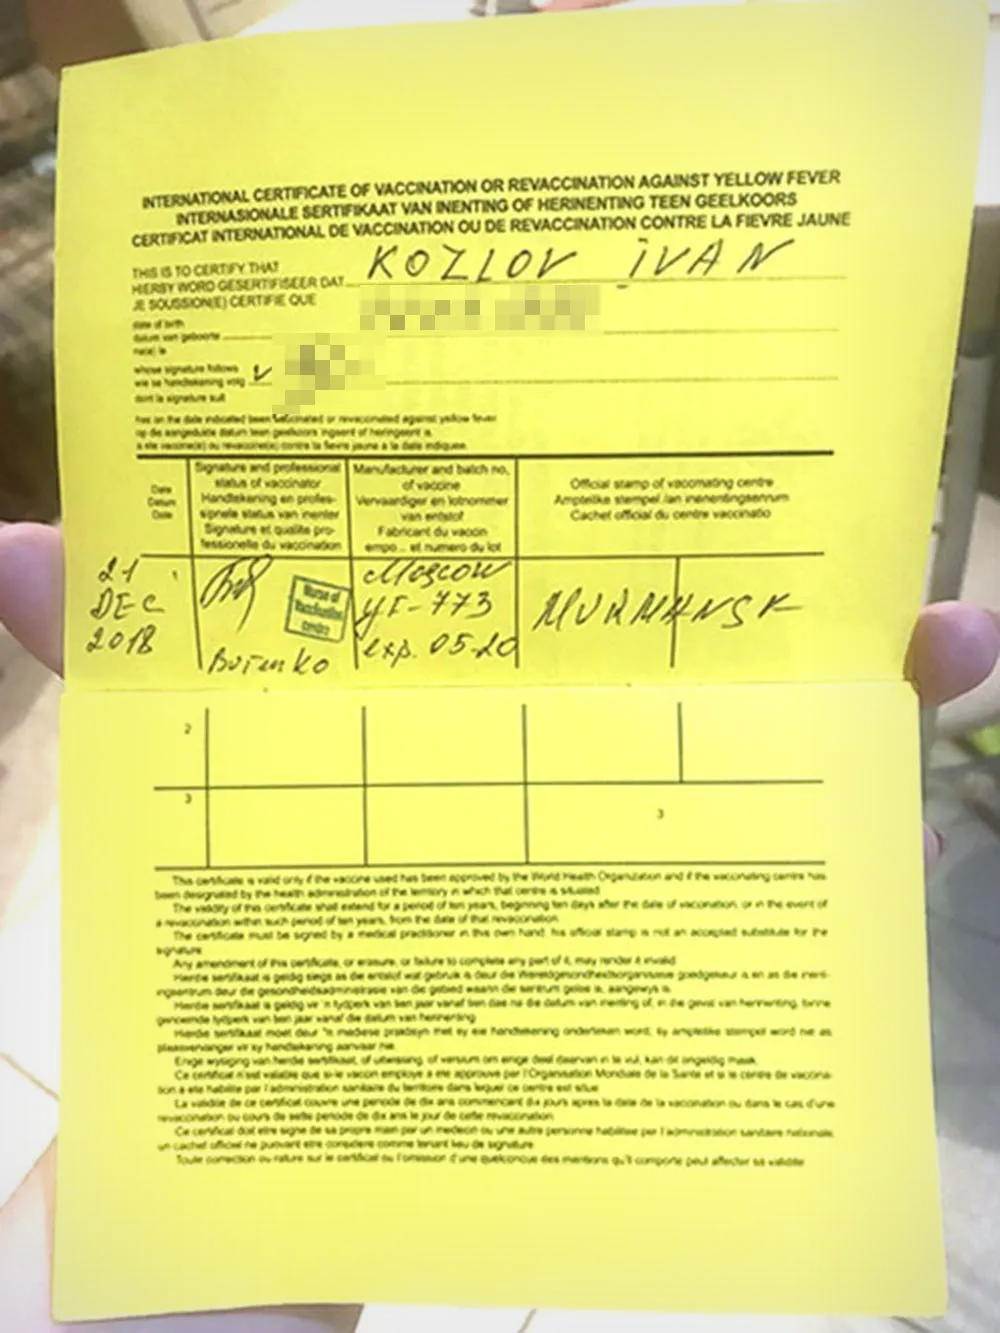 Это мой сертификат о вакцинации против желтой лихорадки, я получил его тоже 21 декабря 2018 года